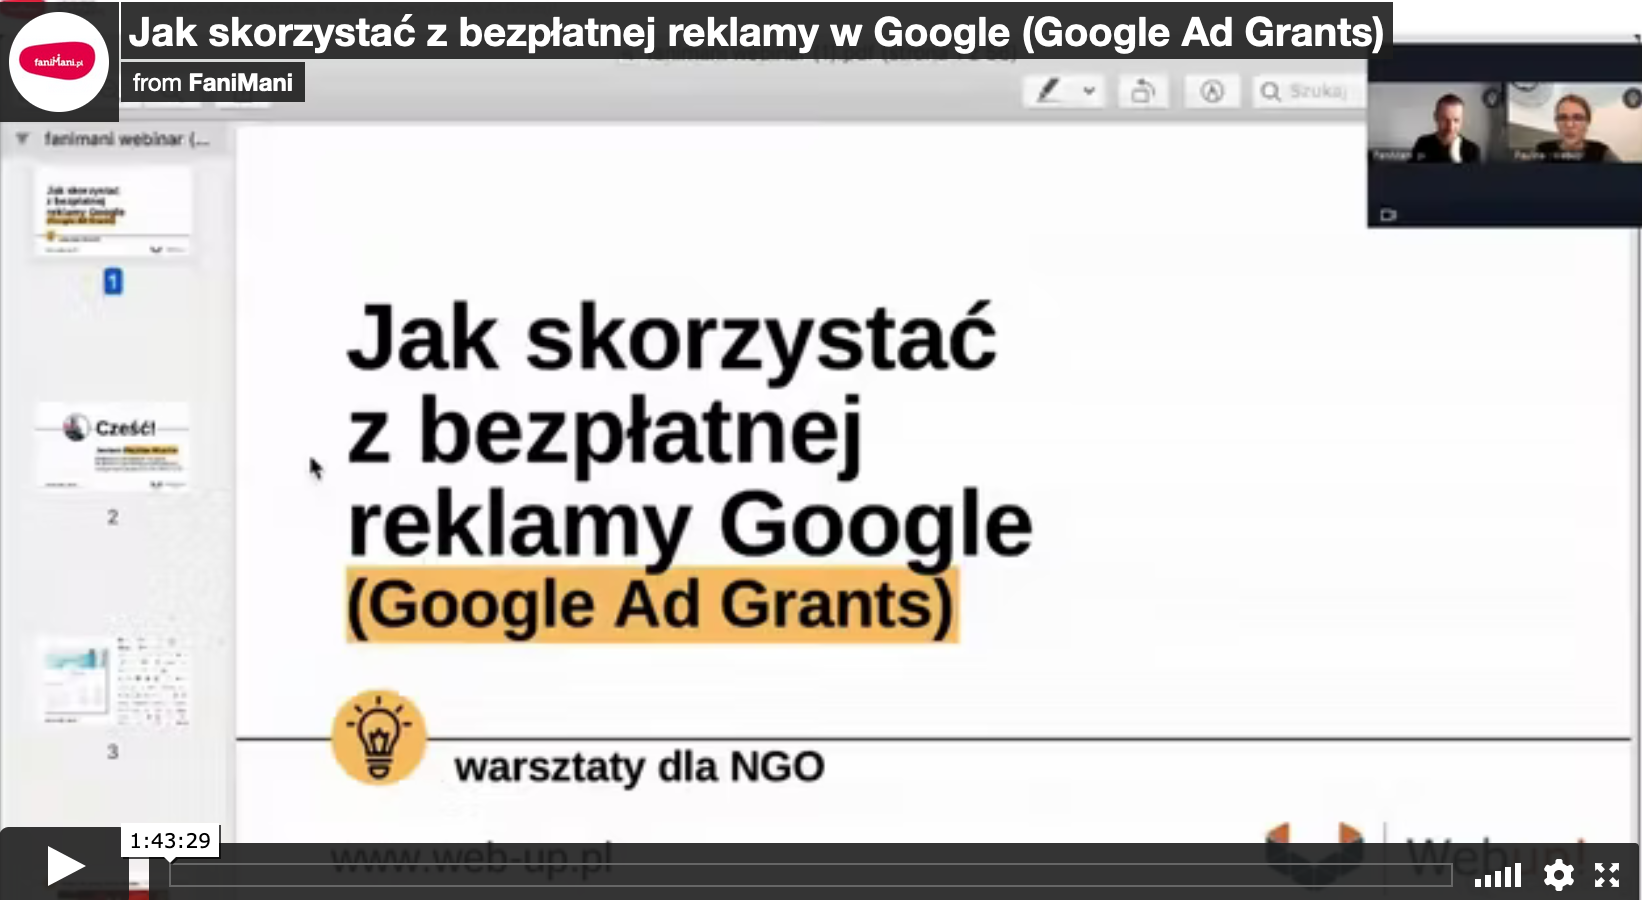 Jak skorzystać z bezpłatnej reklamy w Google (Google Ad Grants)?